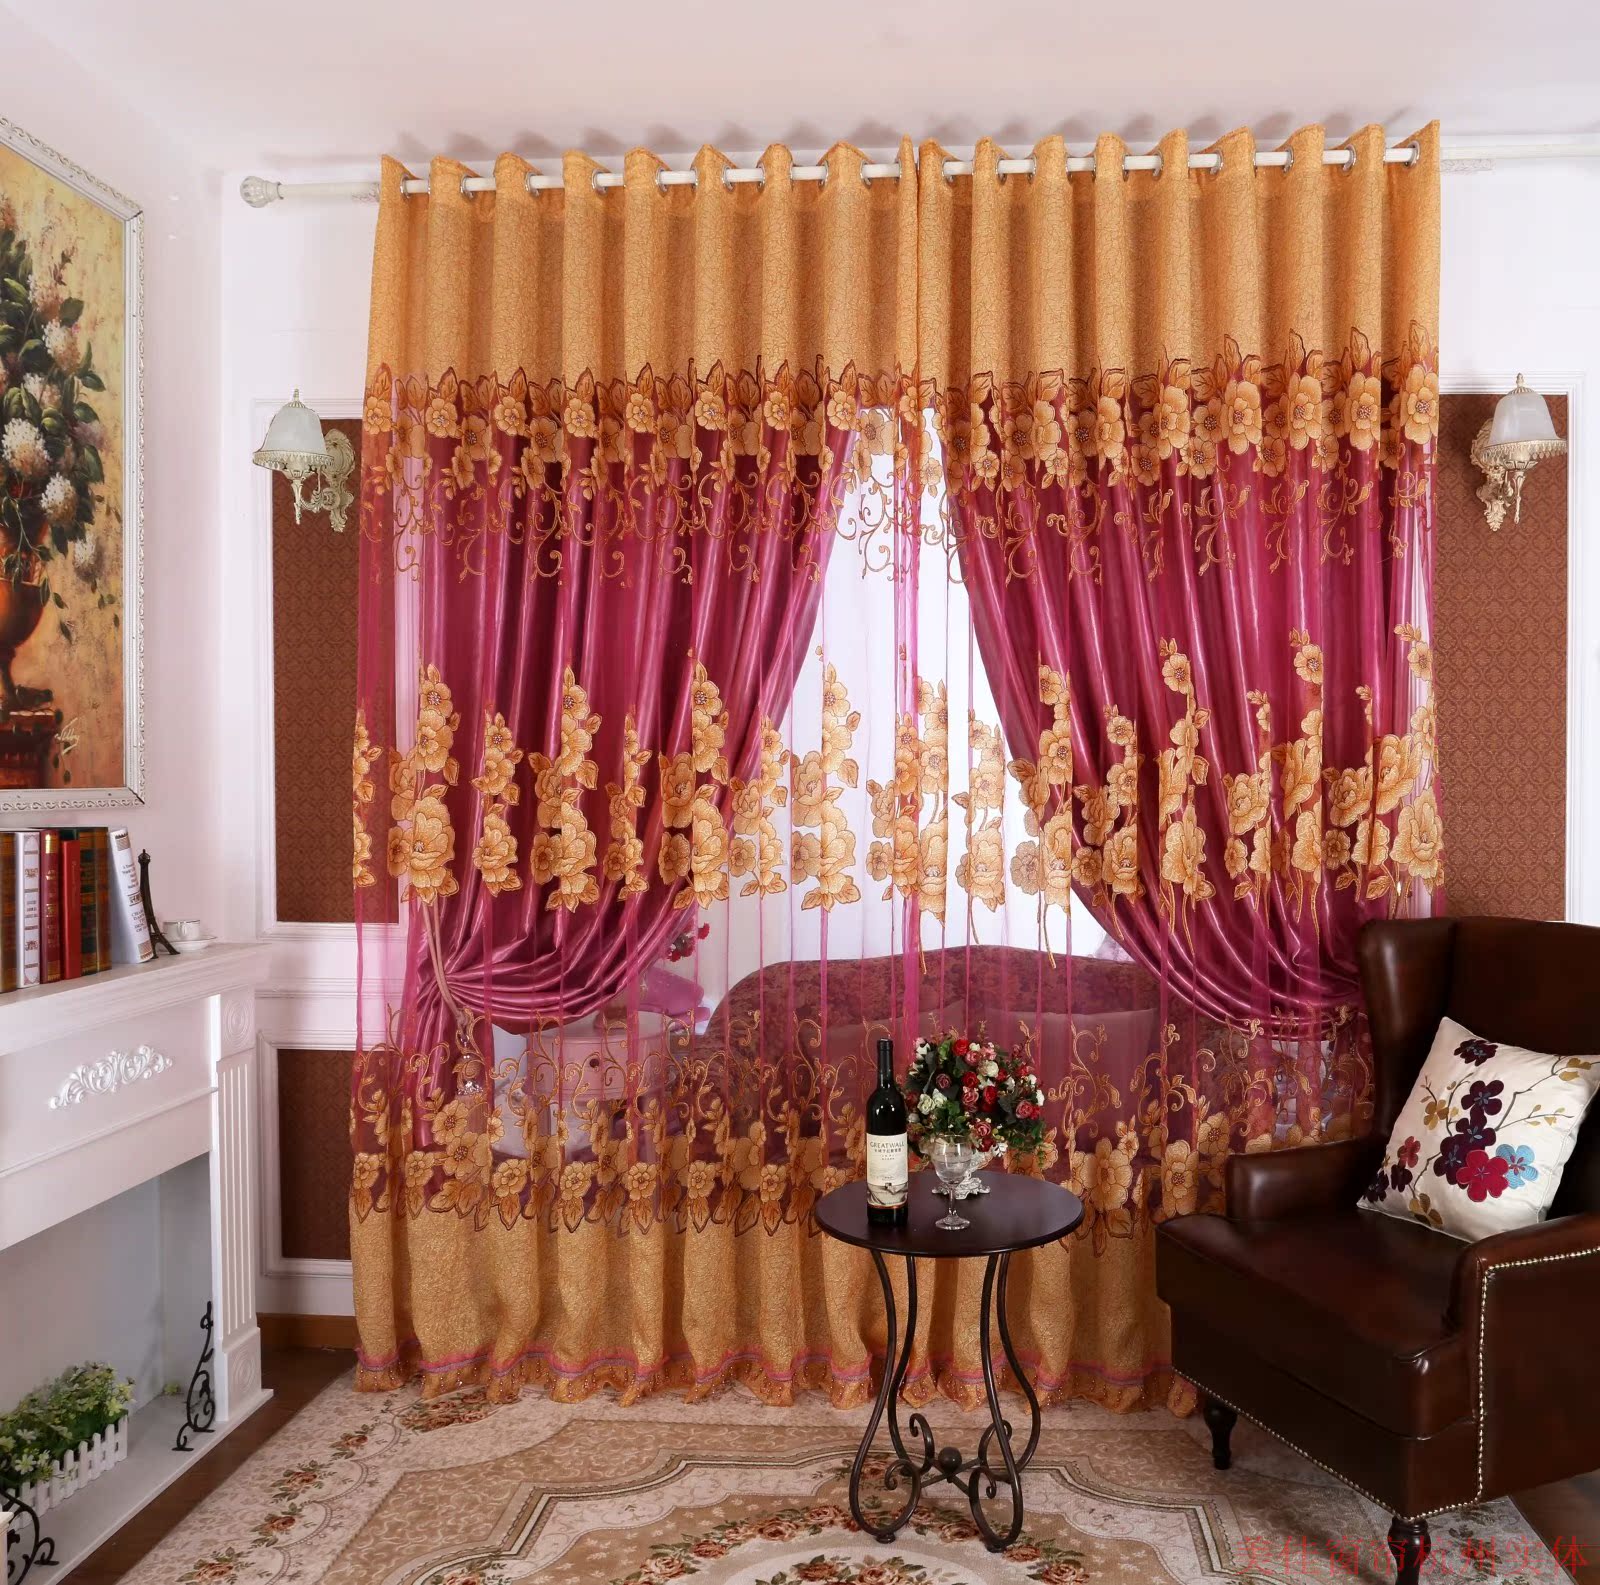 现代欧式客厅高档窗纱卧室窗帘遮光布料飘窗窗帘成品定做新品特价